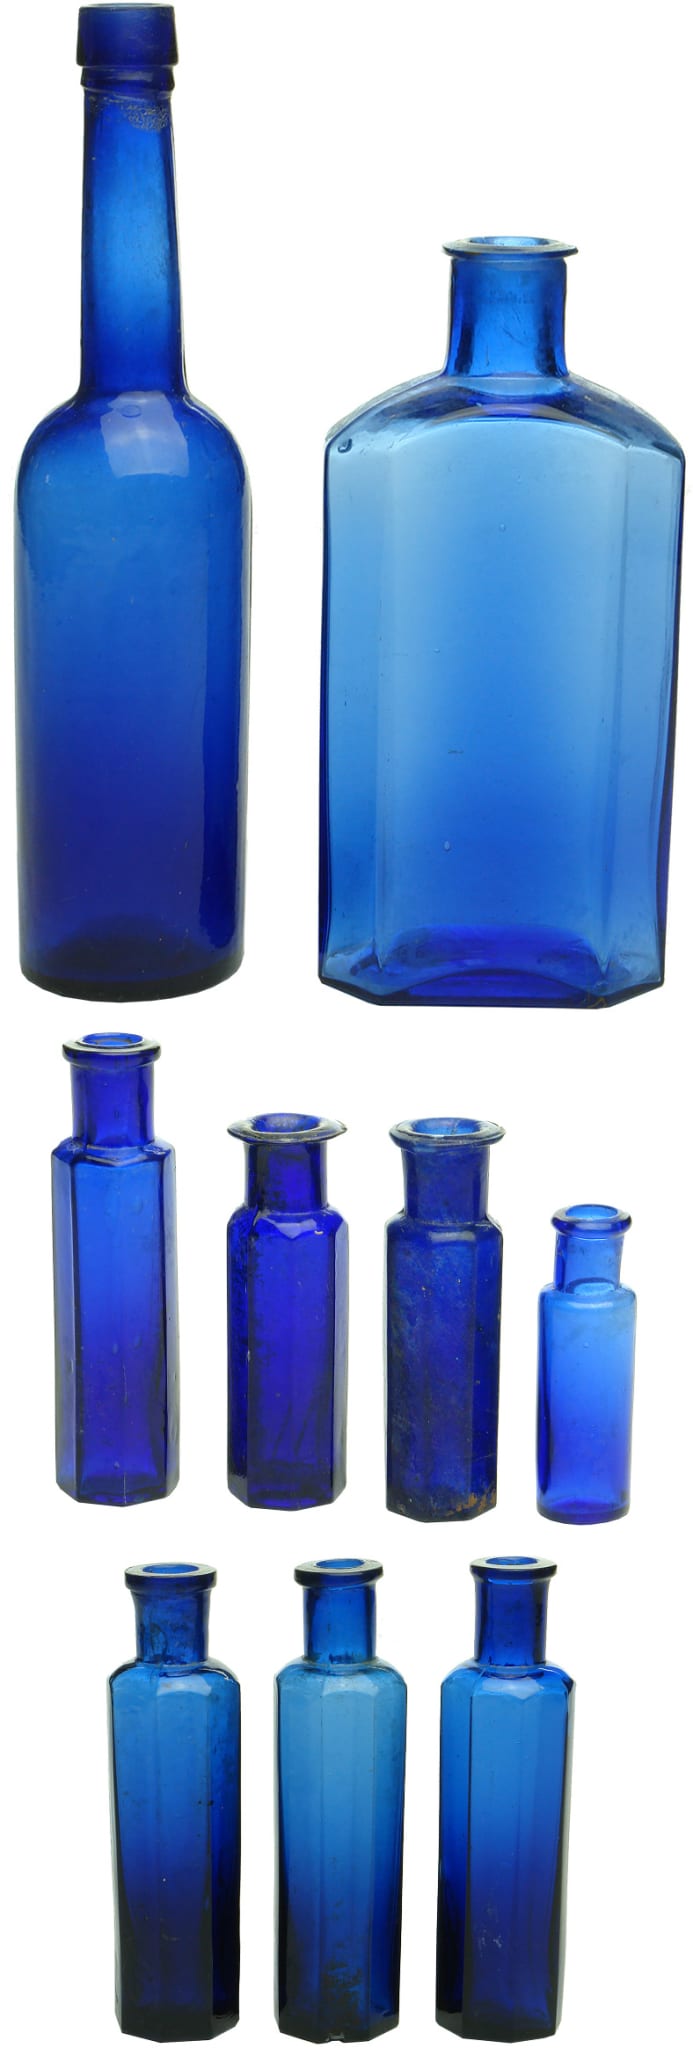 Cobalt Blue Antique Bottles